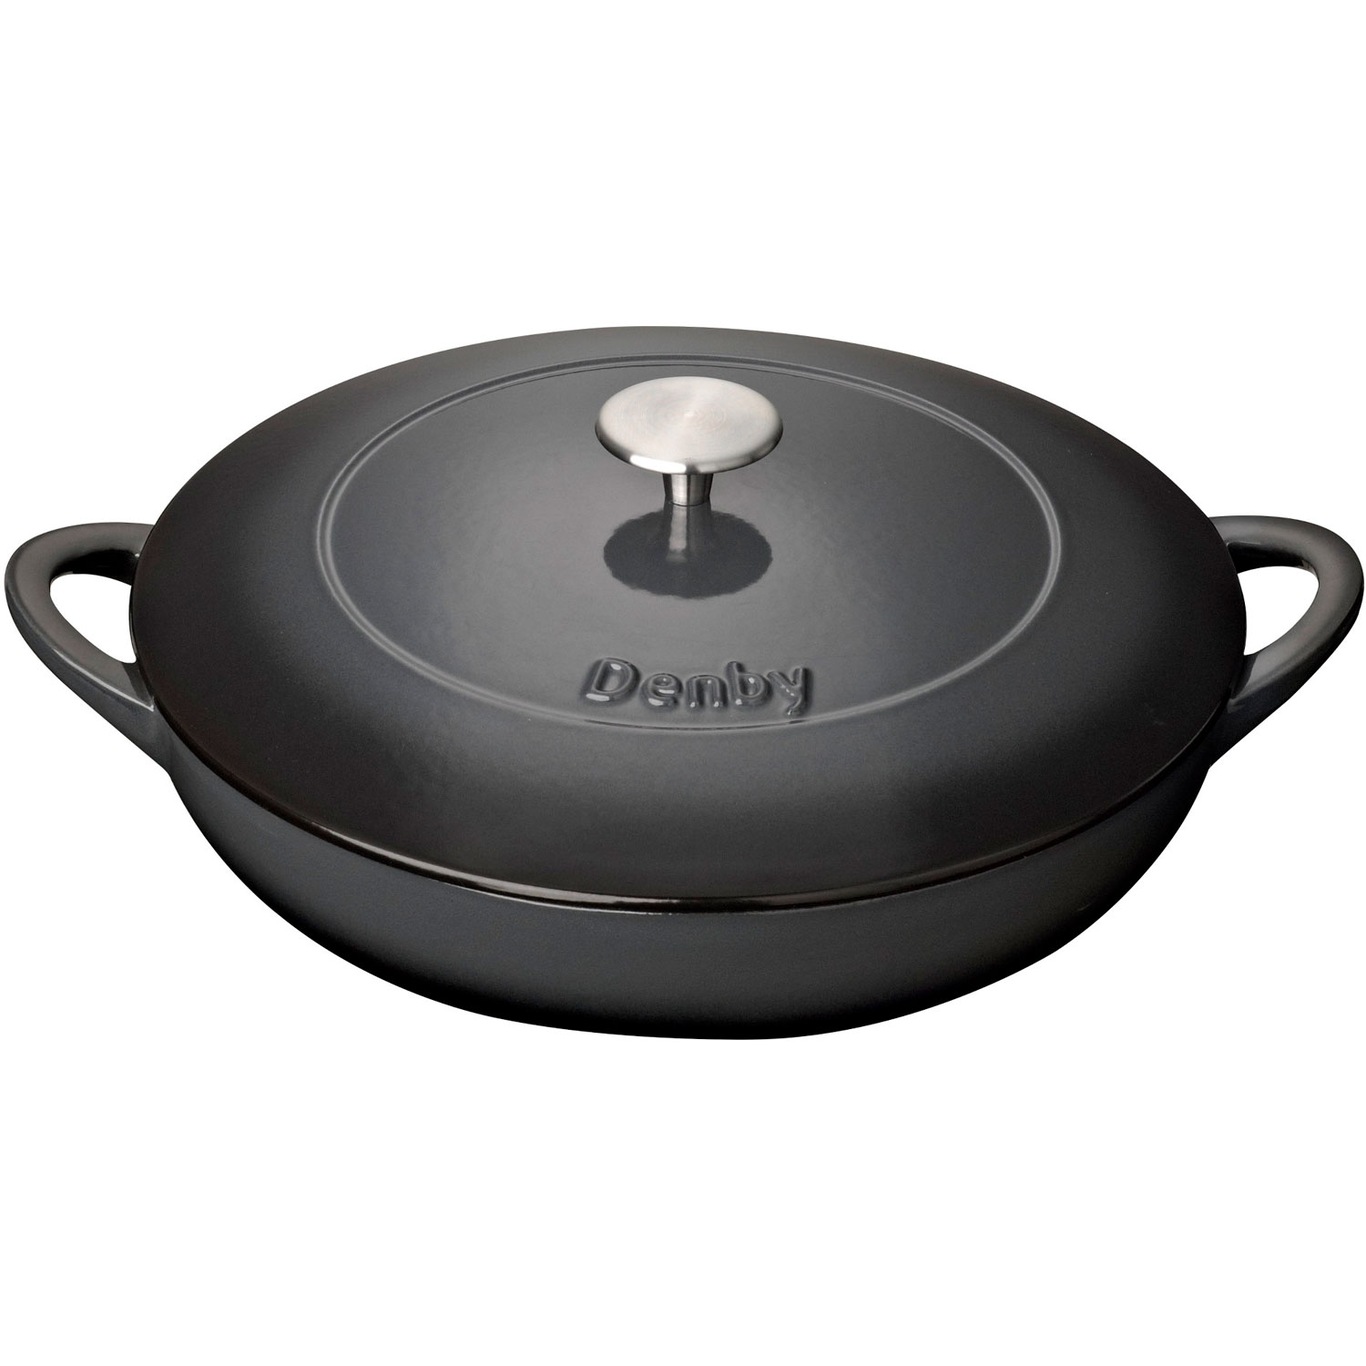 https://royaldesign.com/image/2/denby-cast-iron-30cm-shallow-casserole-5?w=800&quality=80